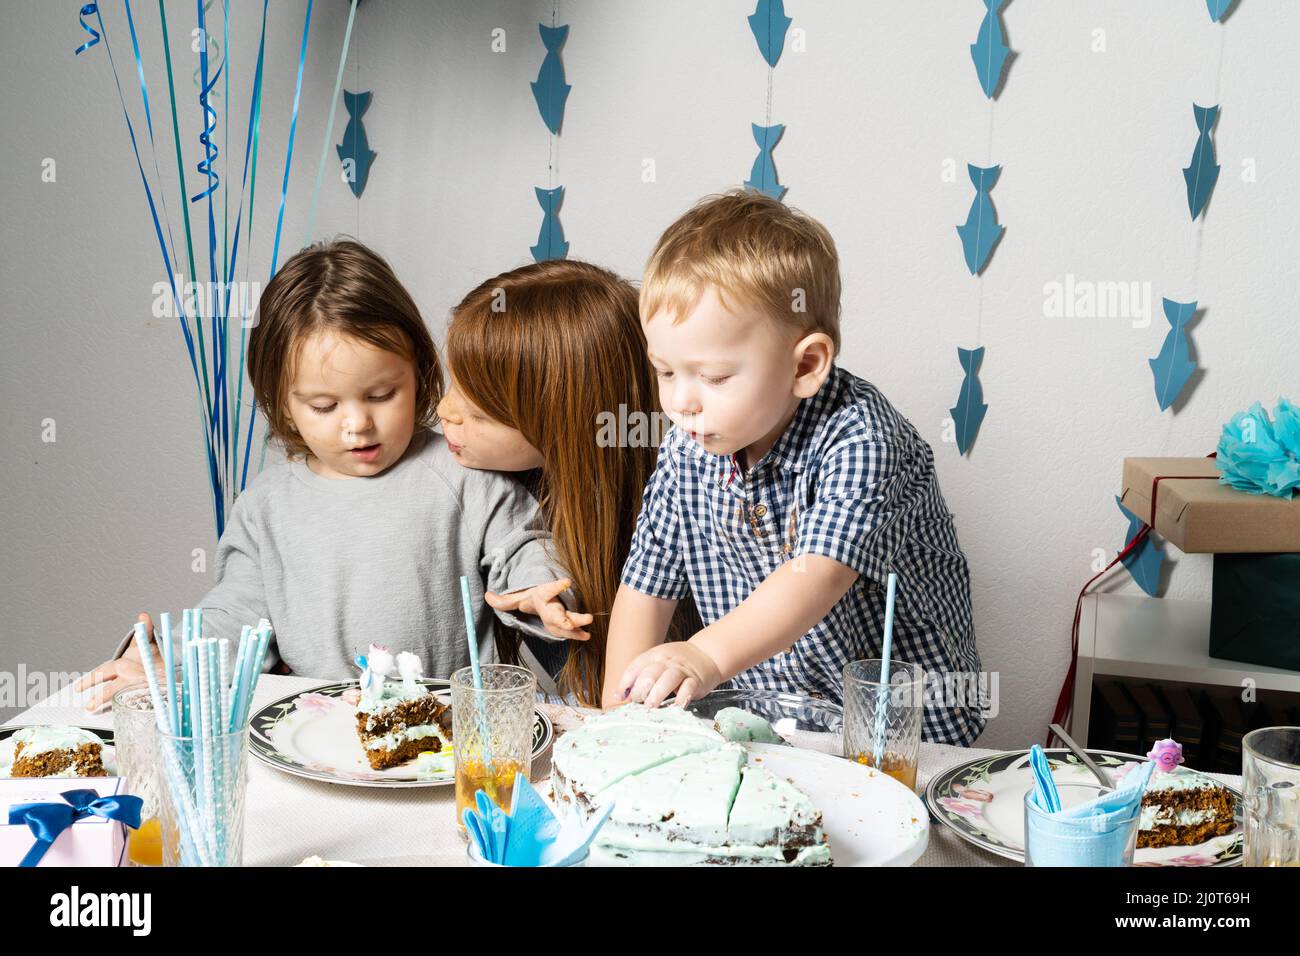 Fratelli. Compleanno del ragazzo al tavolo. I ragazzi al tavolo tagliano una torta di compleanno. Foto Stock